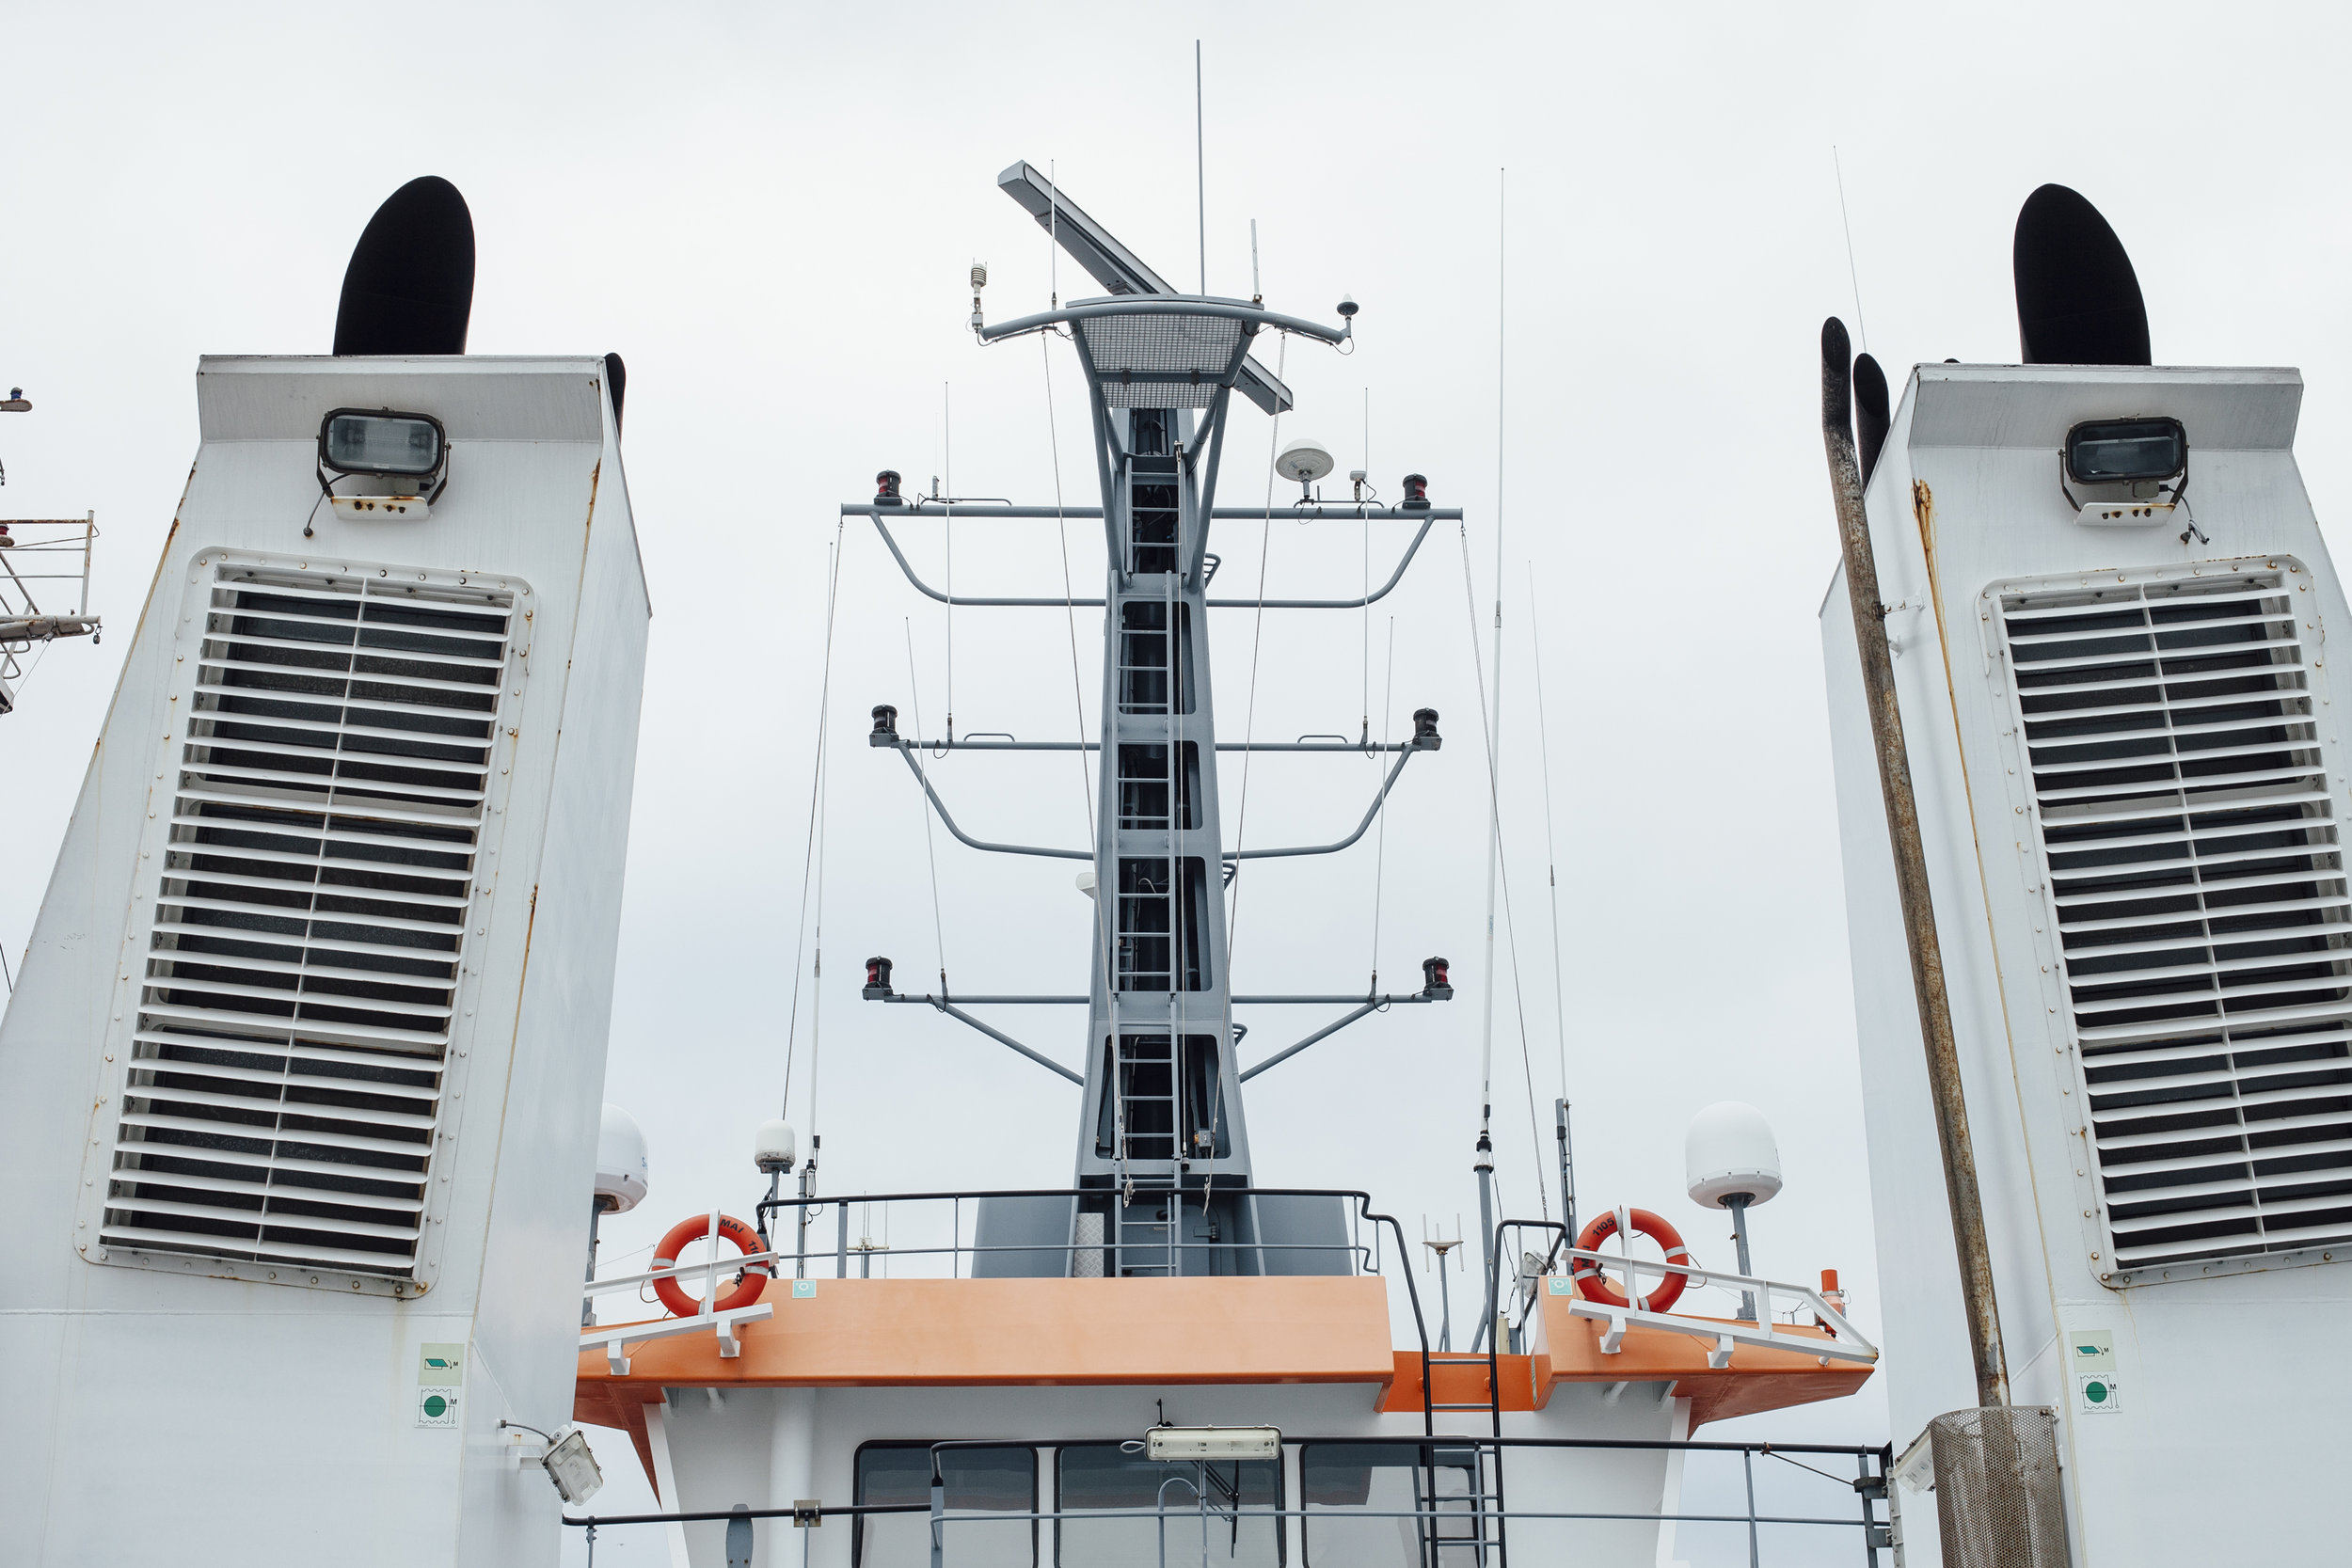  Radaranlage OPV (Offshore Patrol Vessel) 6610, Constanta 